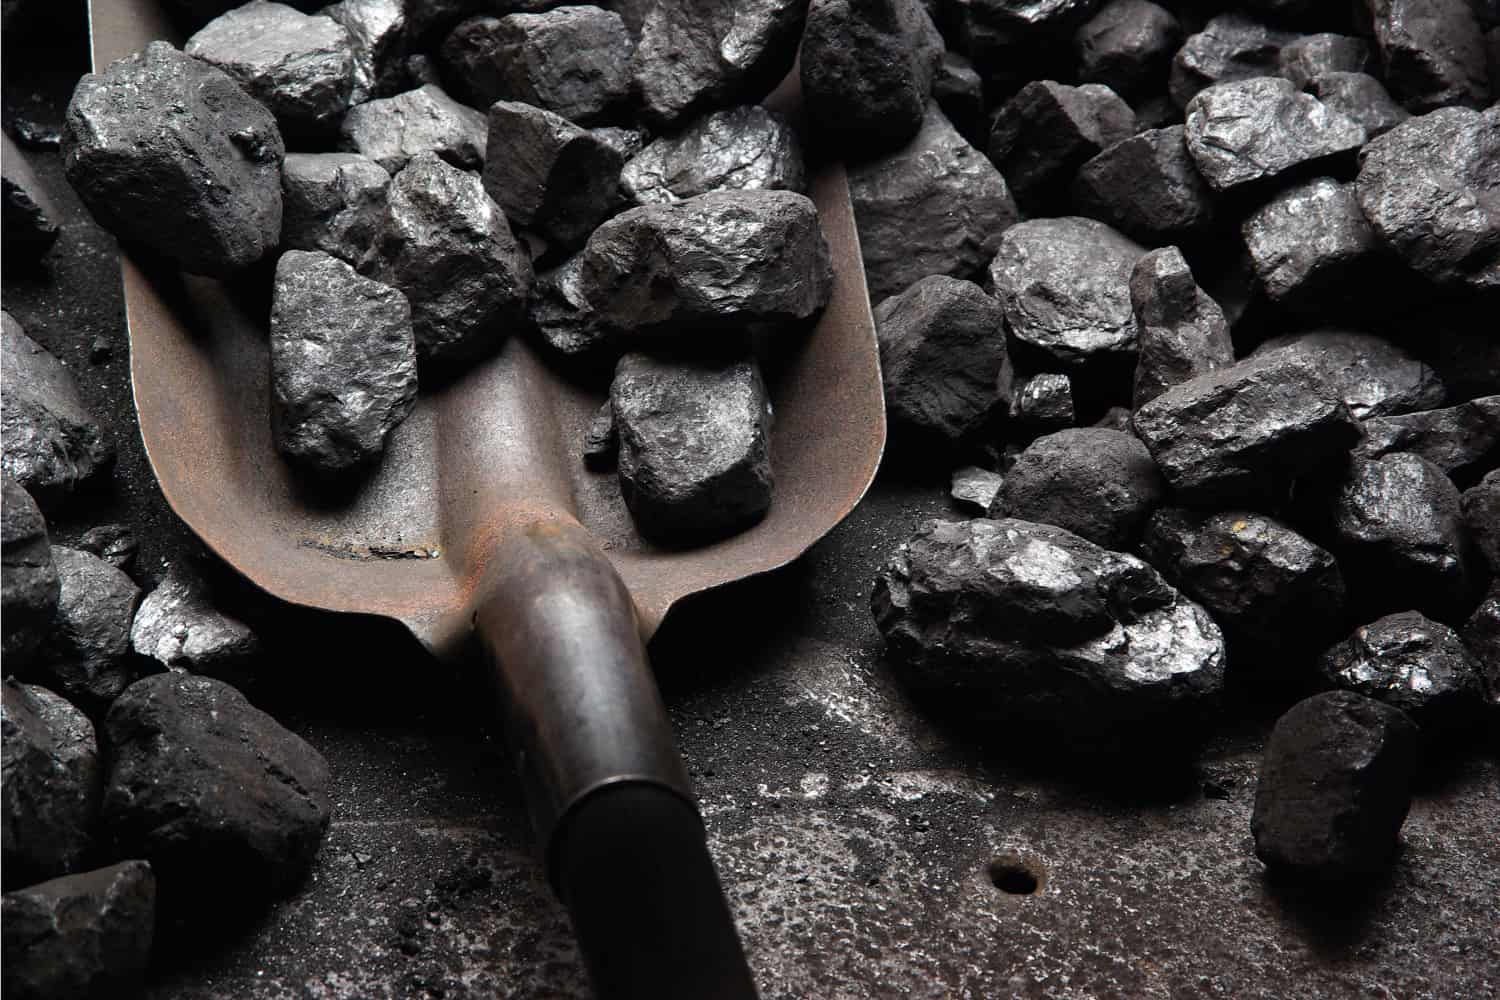 shoveling black coal